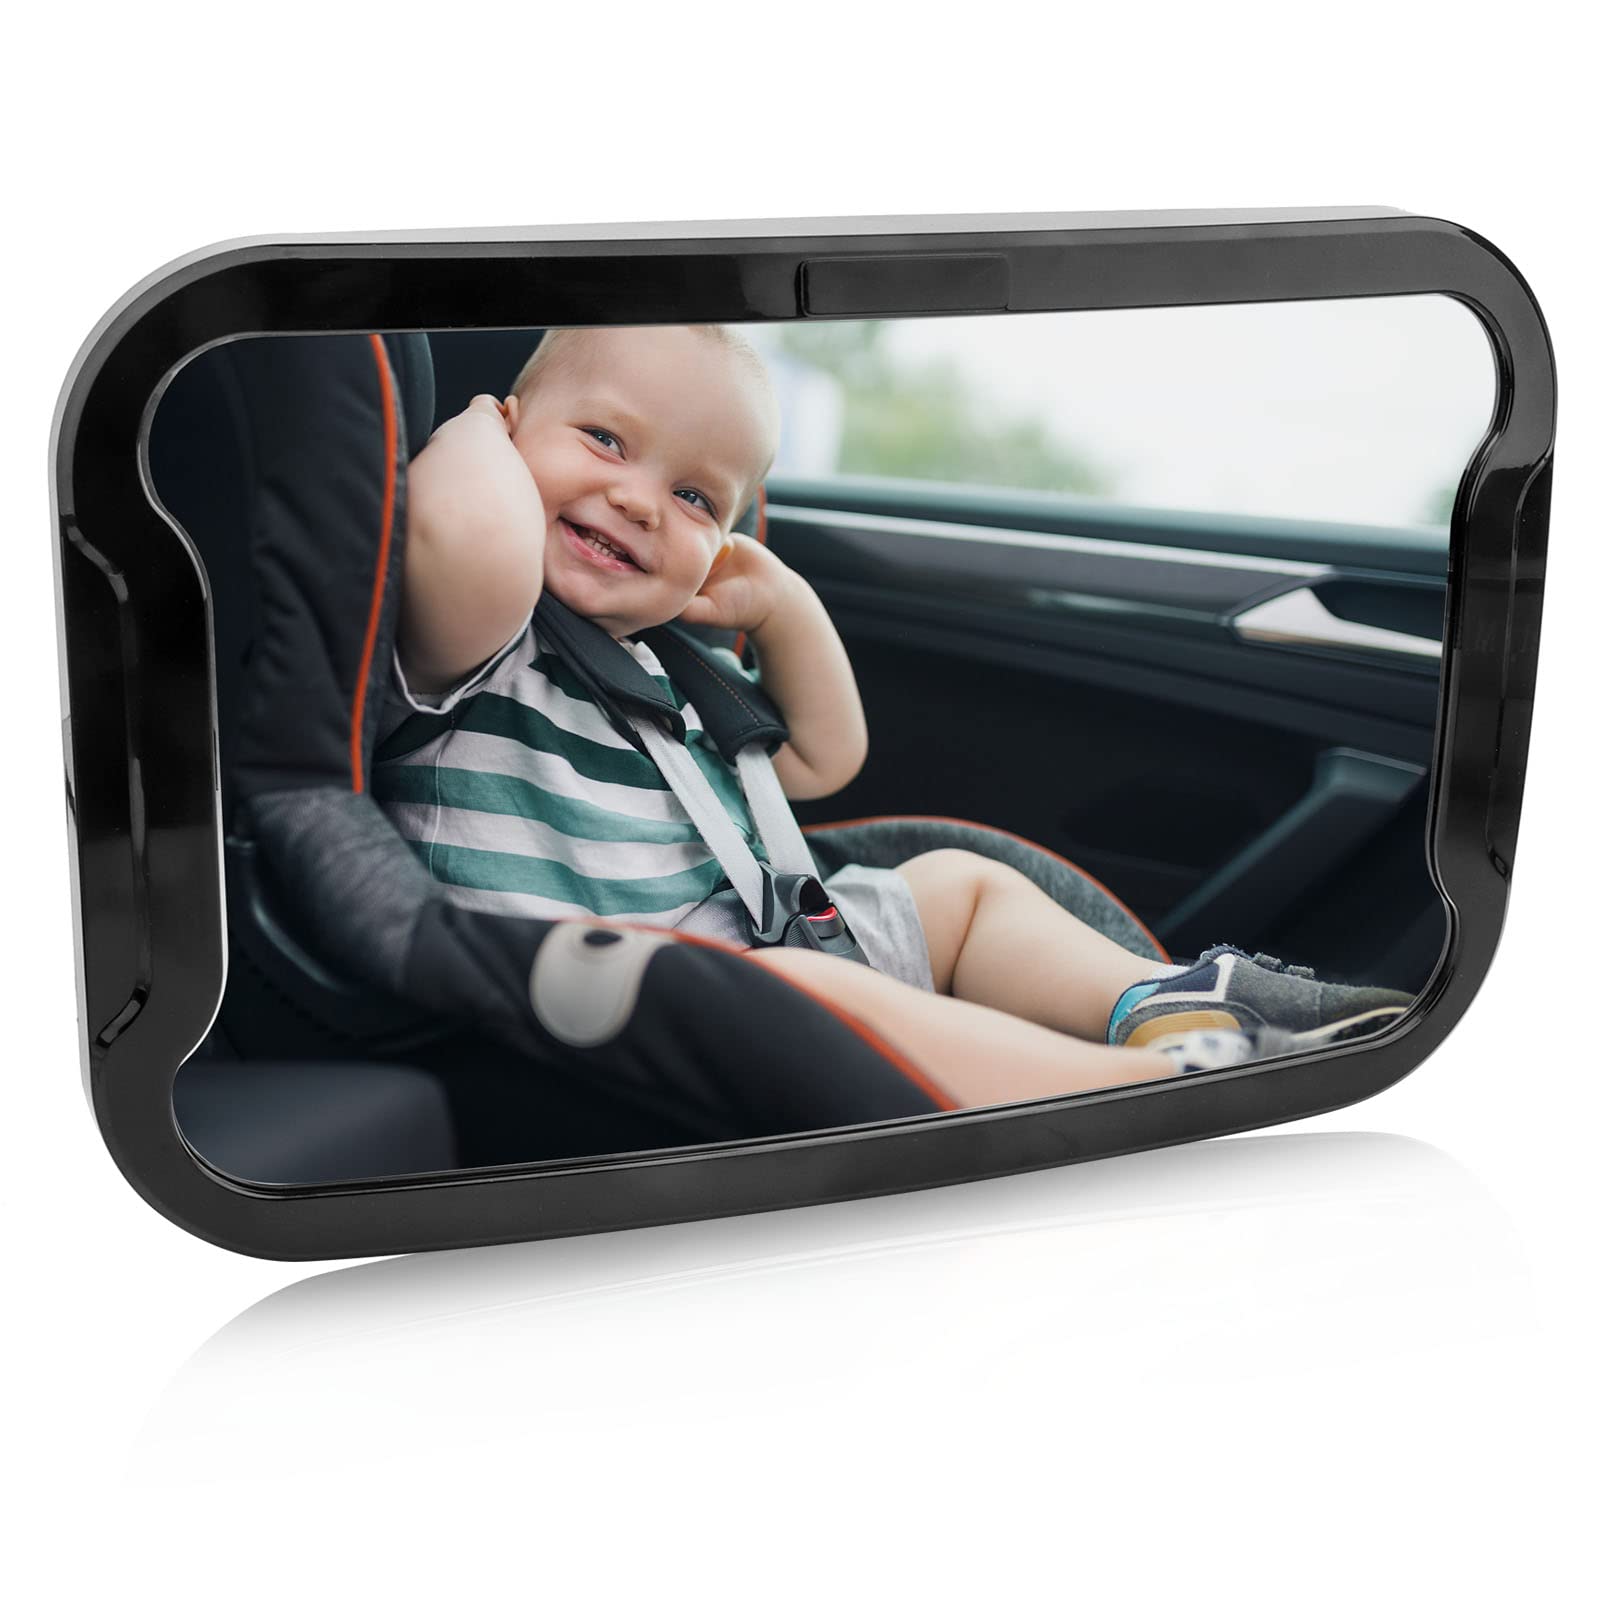 Rücksitzspiegel fürs Baby,360° Baby Autospiegel,Schwenkbar Auto-Rücksitzspiegel baby,Spiegel Auto Baby aus bruchsicherem Material, Bruchsicherer Auto-Baby rückspiegel,Verstellbare elastische Riemen von talifoca